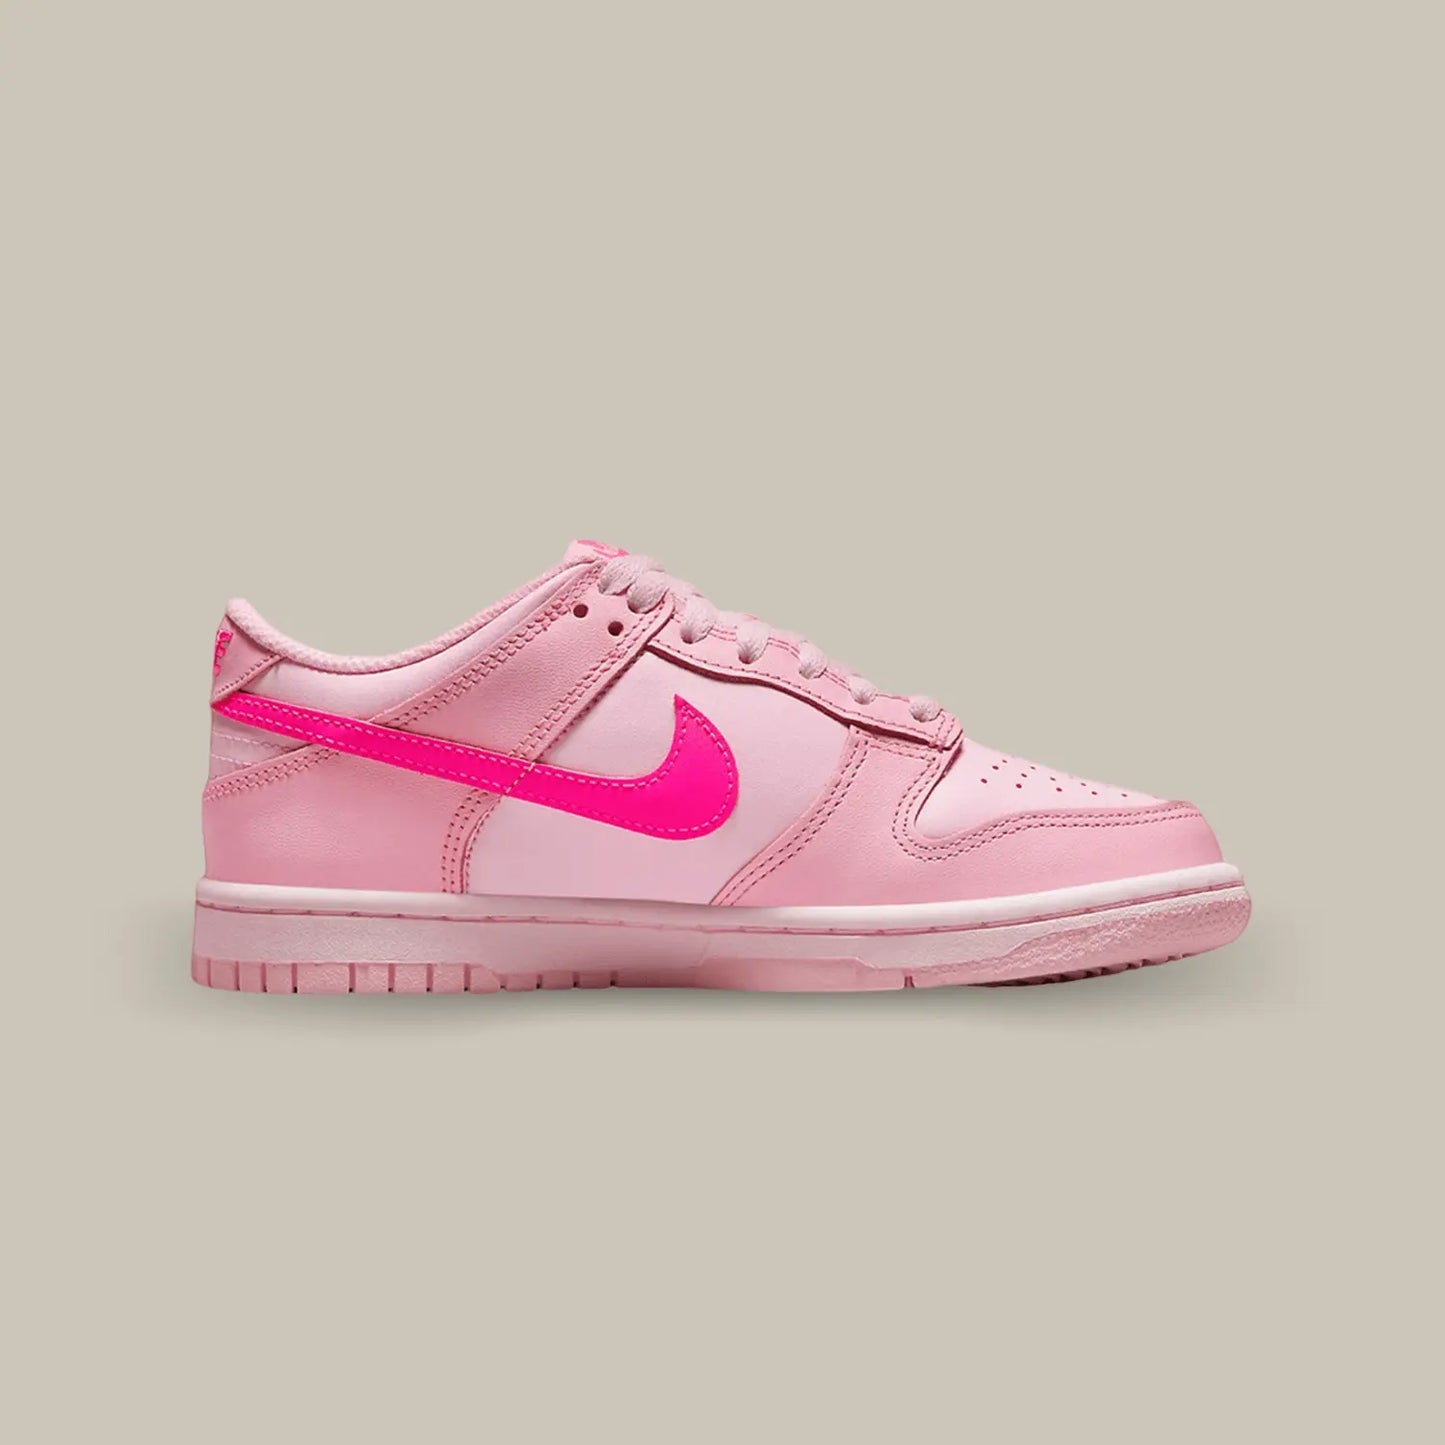 La Nike Dunk Low Triple Pink de coté avec une base de rose clair, des empiècement rose foncé et le swoosh rose pétante.